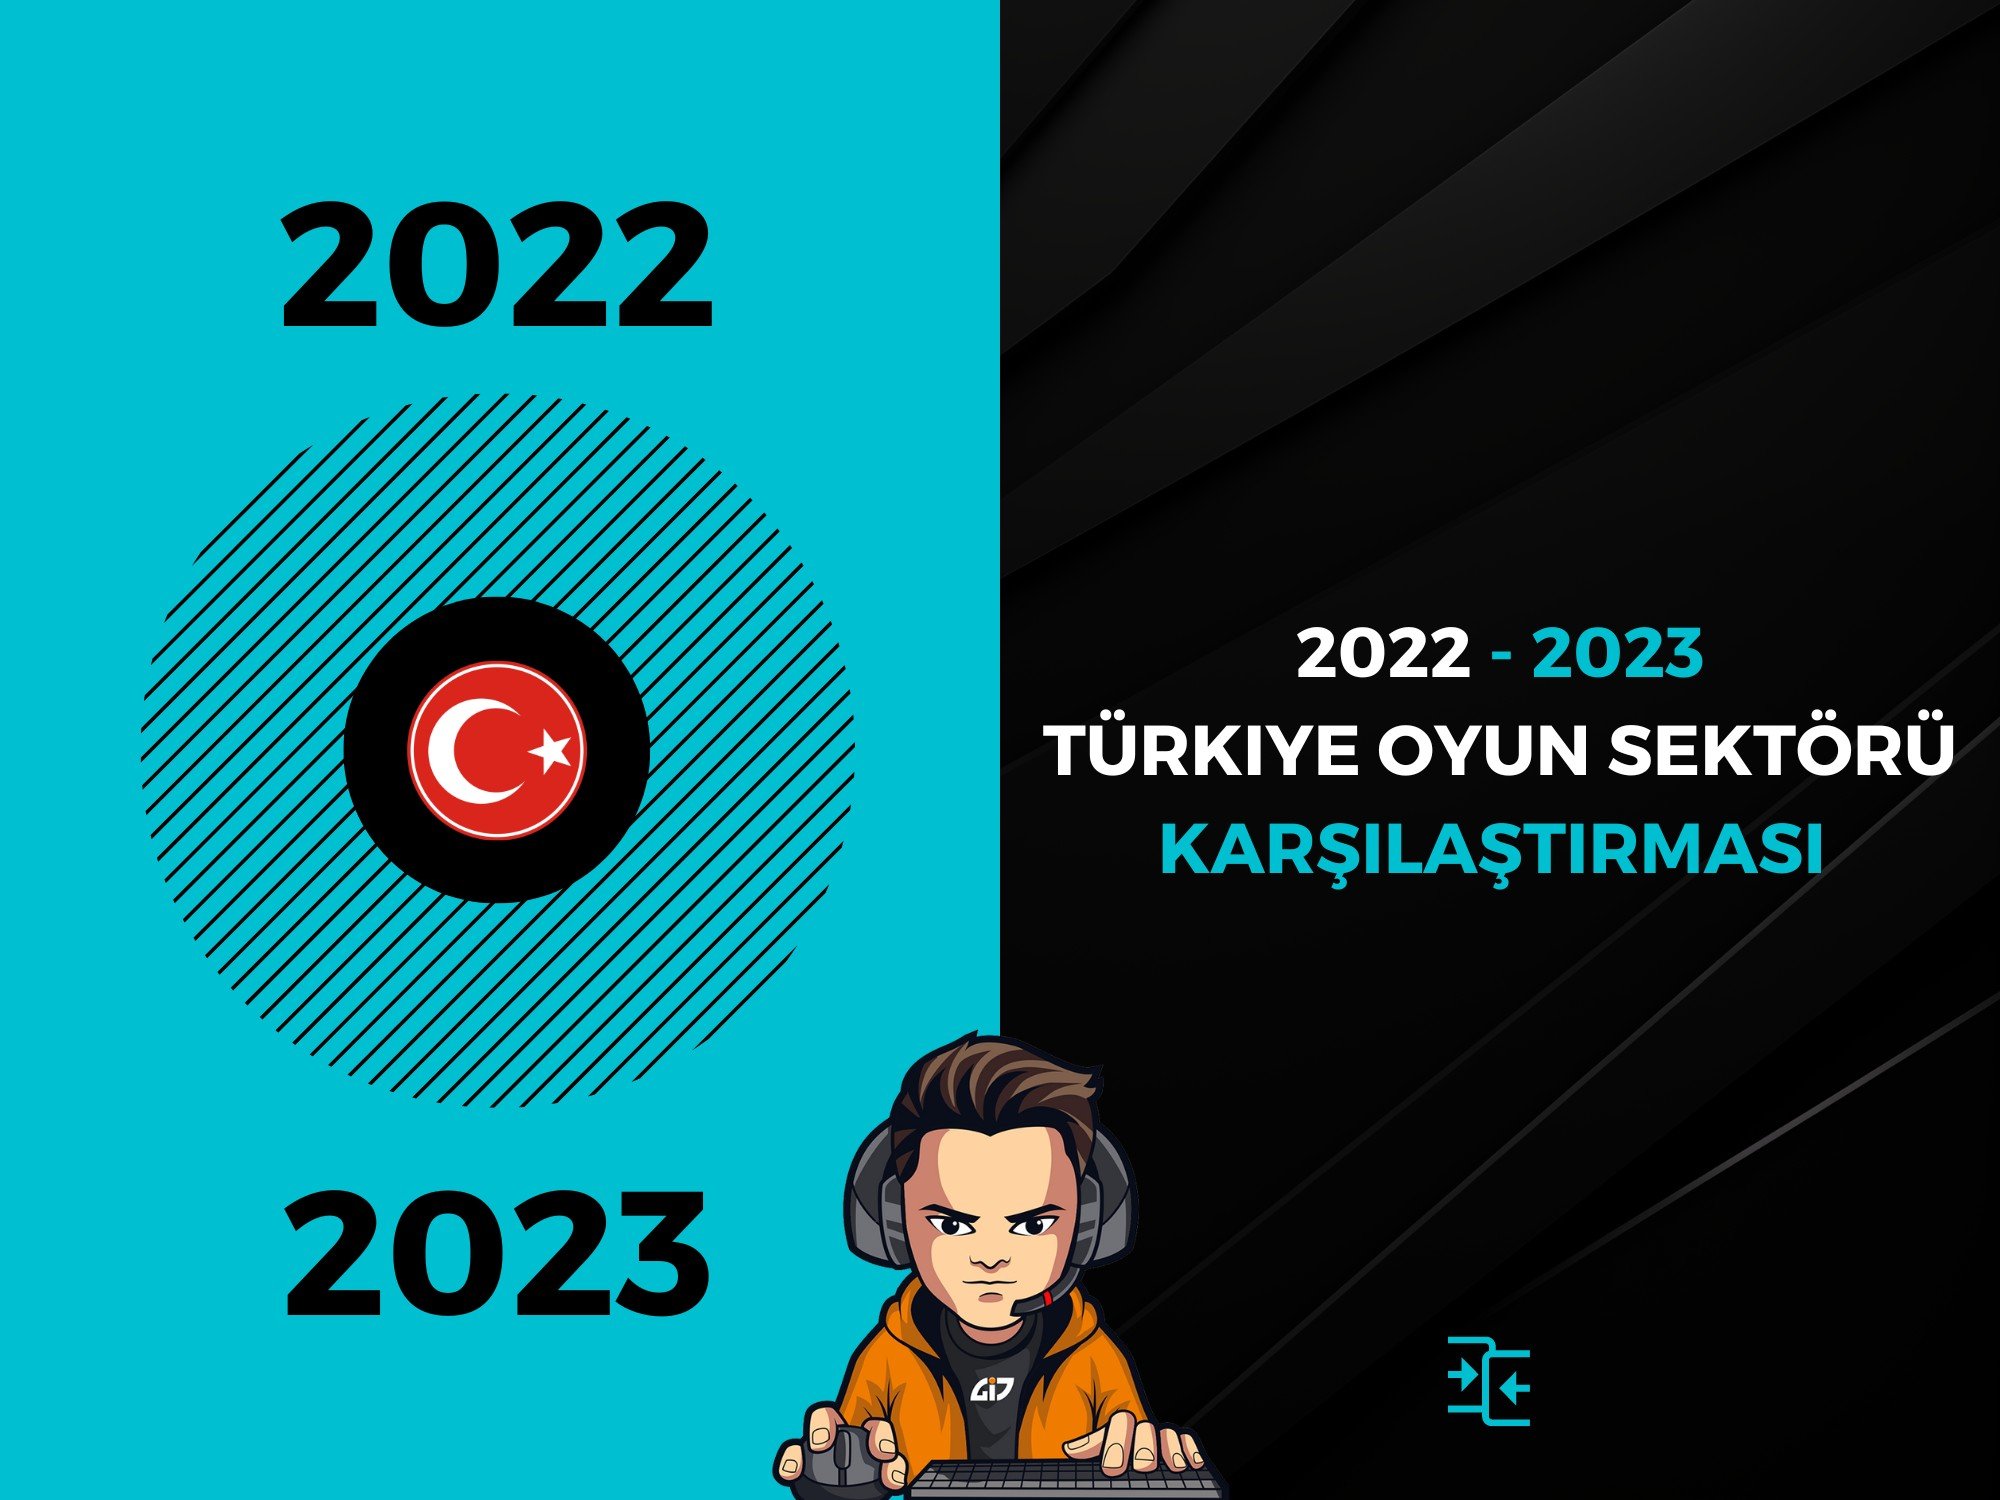 2022 - 2023 türkiye oyun sektörü karşılaştırması